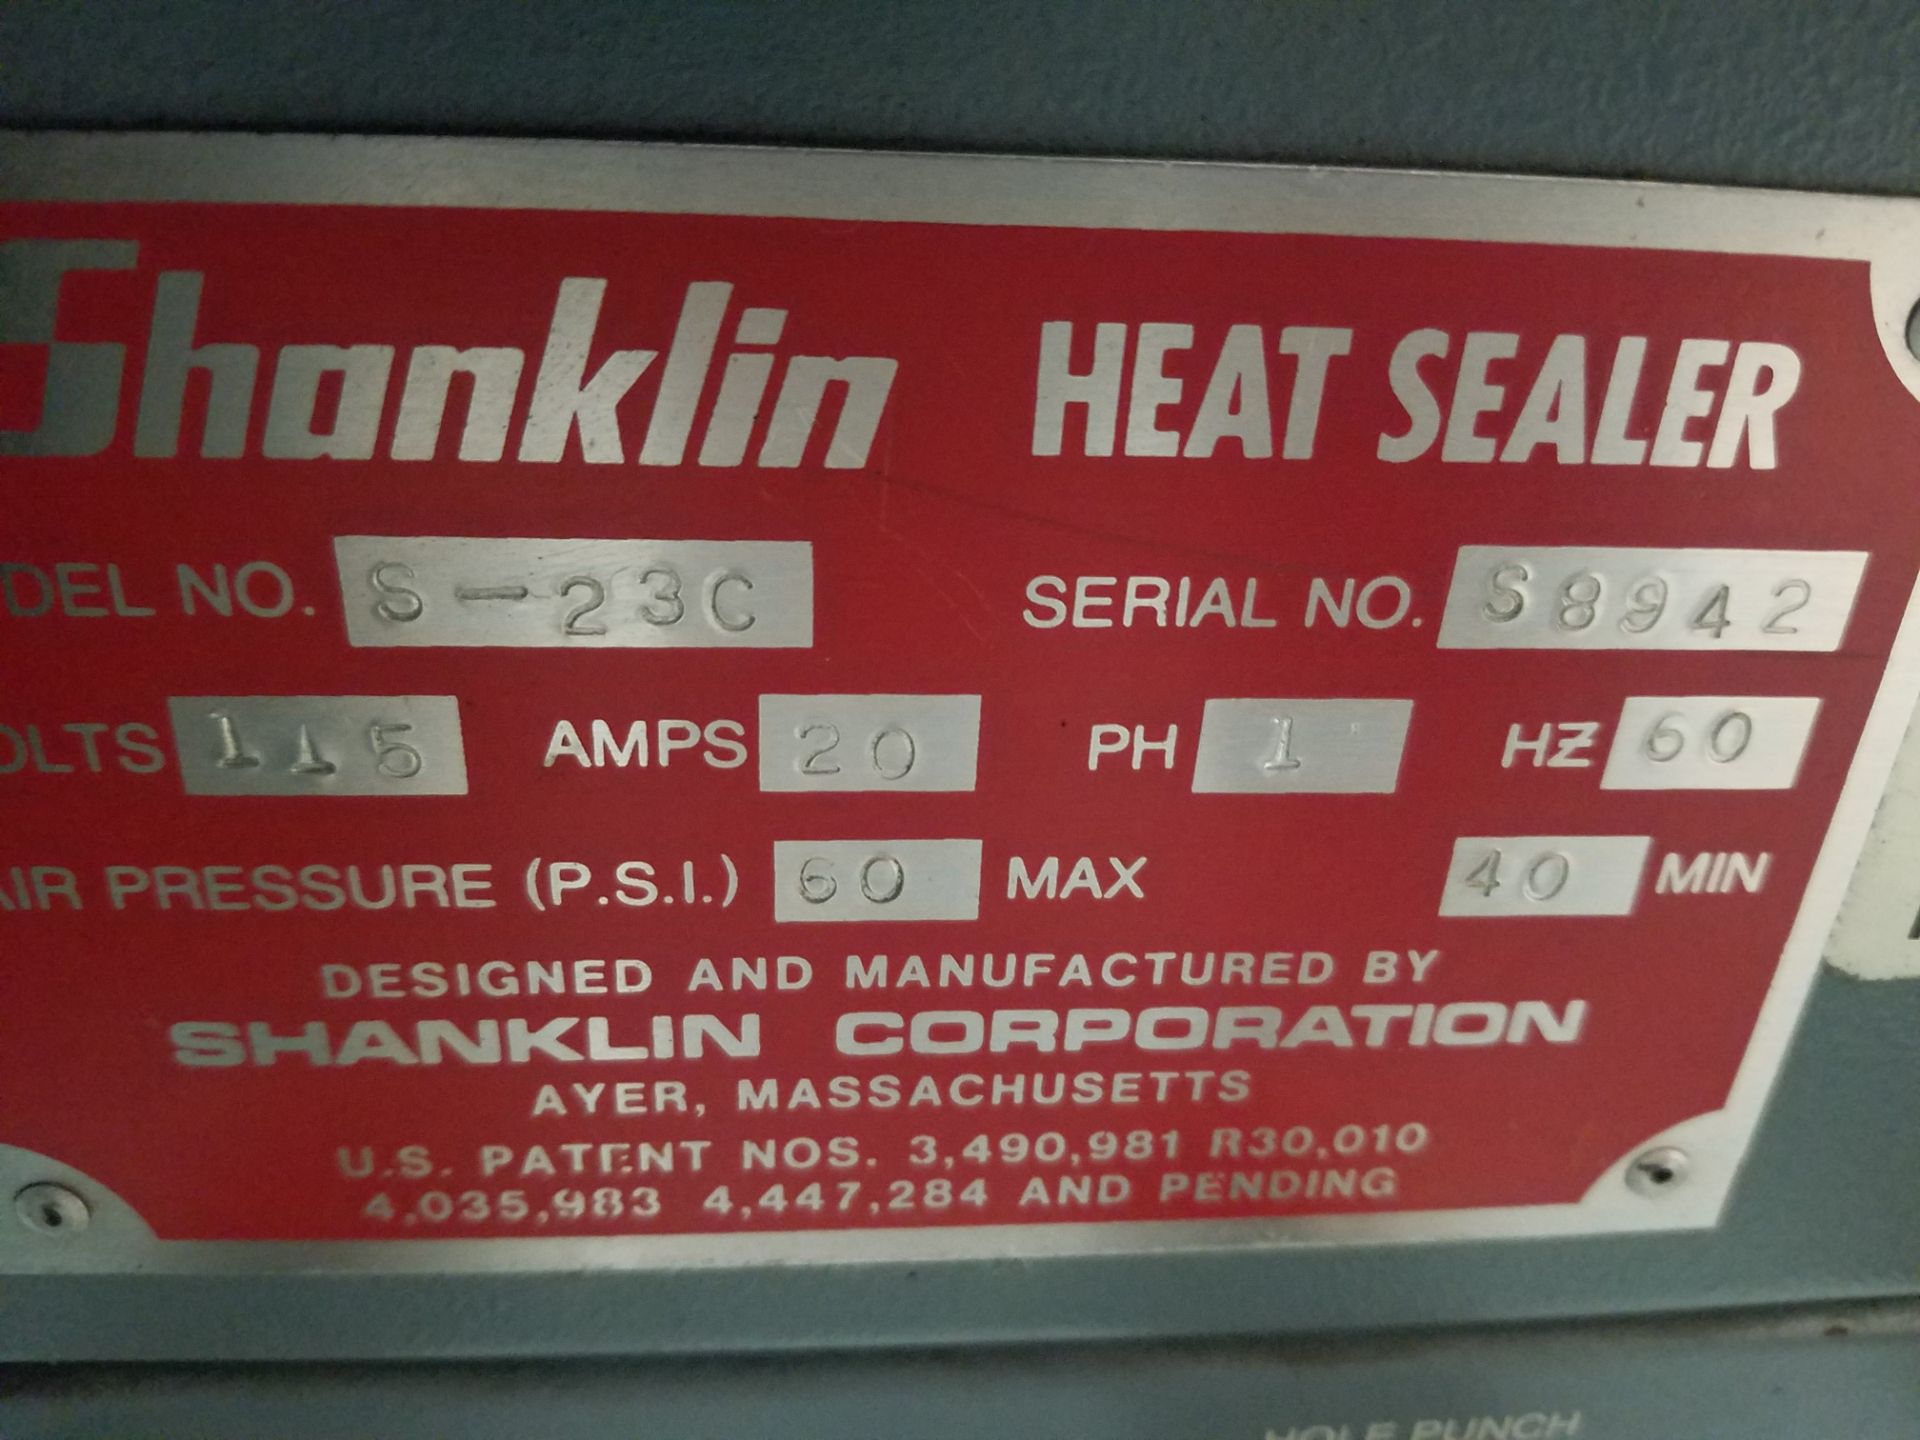 Shanklin S-23C Heat Sealer, Serial S8942, Volt 208, 1-Phase (Loading, Rigging & Site Management Fee - Image 5 of 5